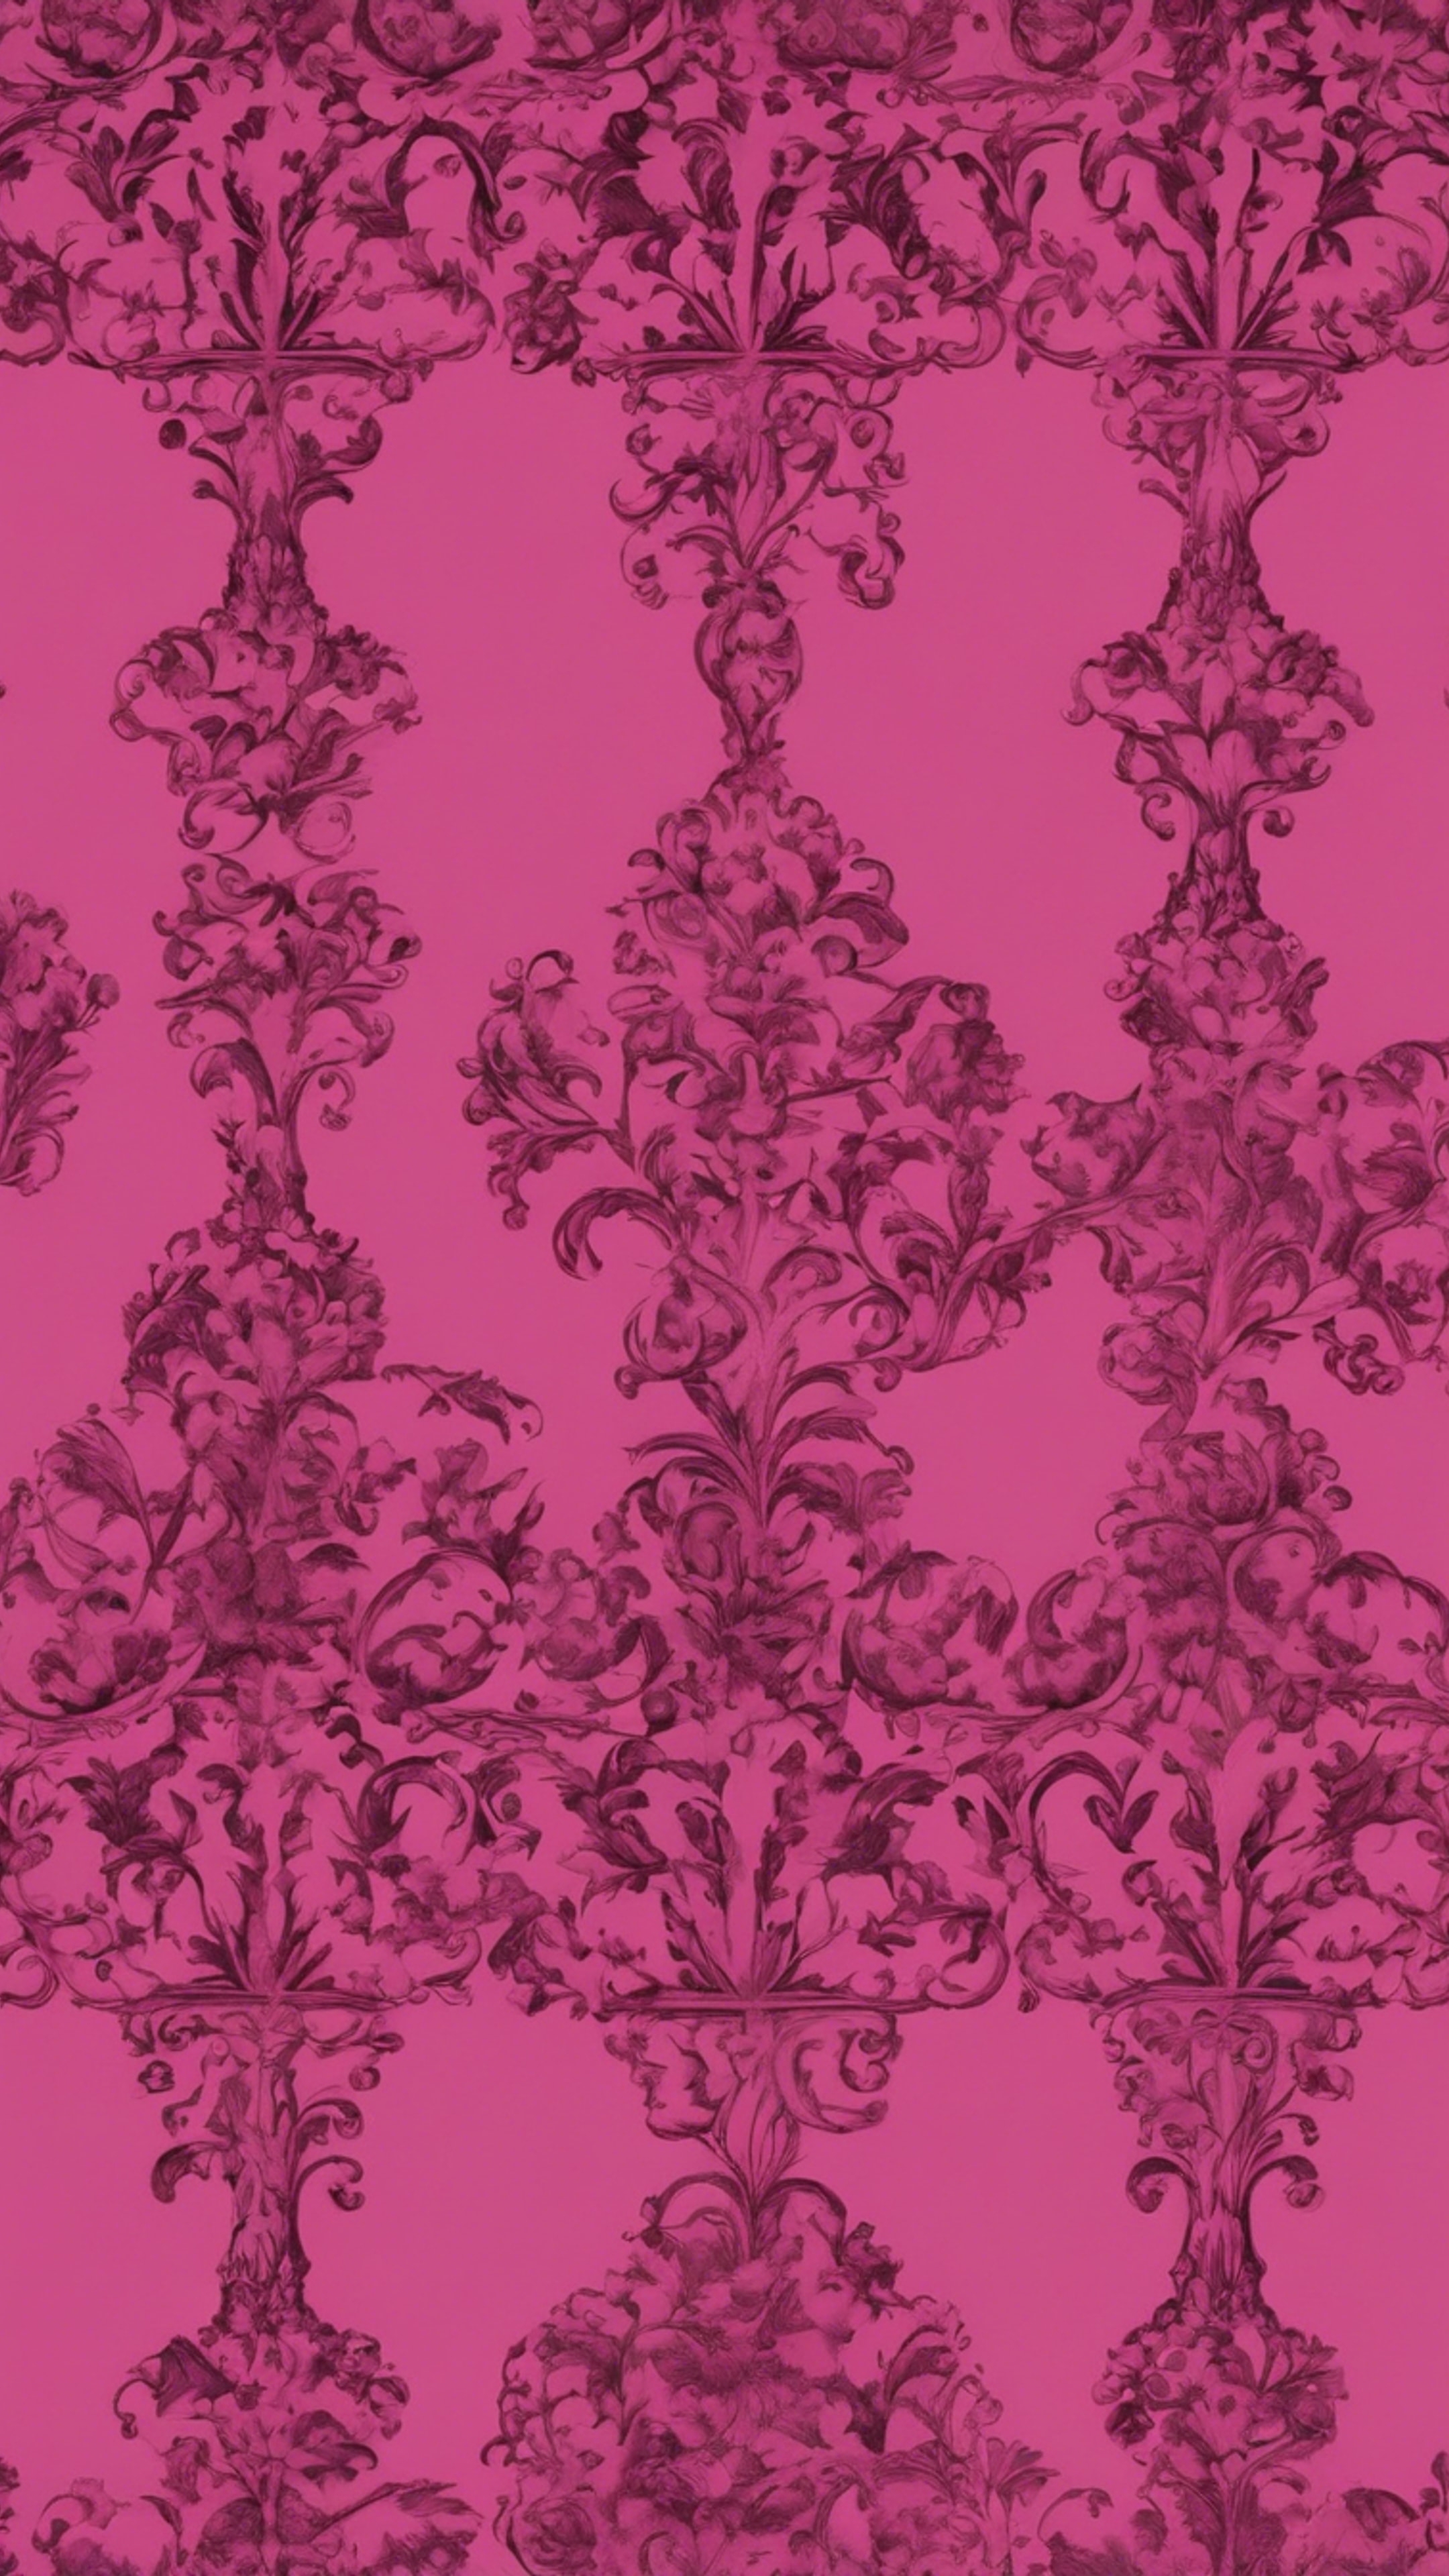 A dark pink Gothic background with baroque patterns. Hintergrund[5770fecf2152499e8904]